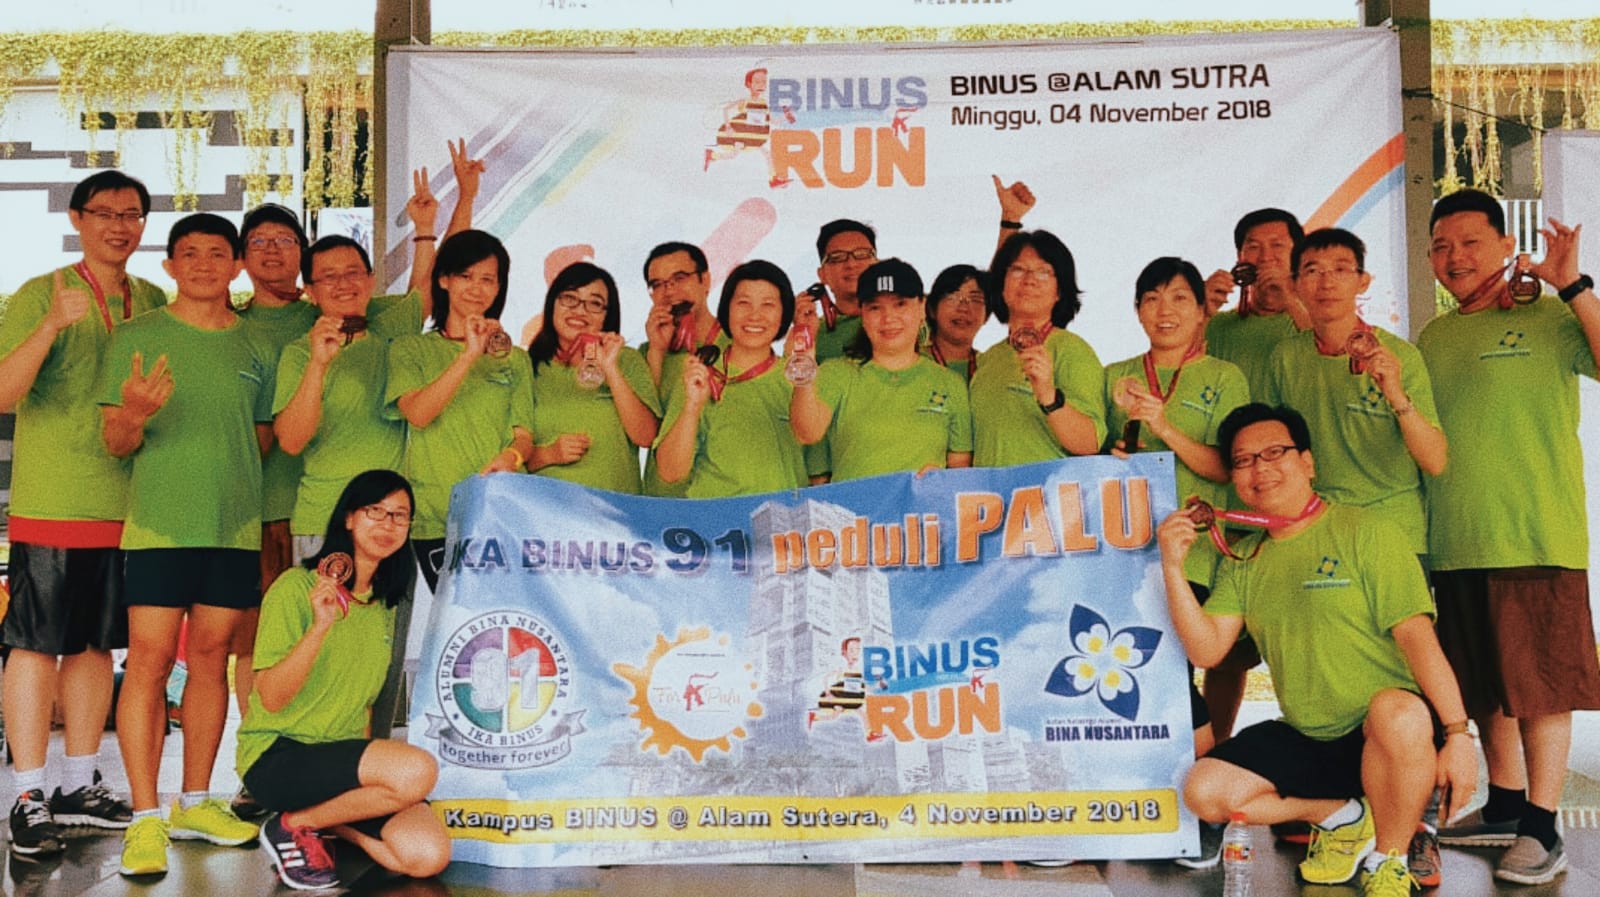 Binus Run Alsut Alumni